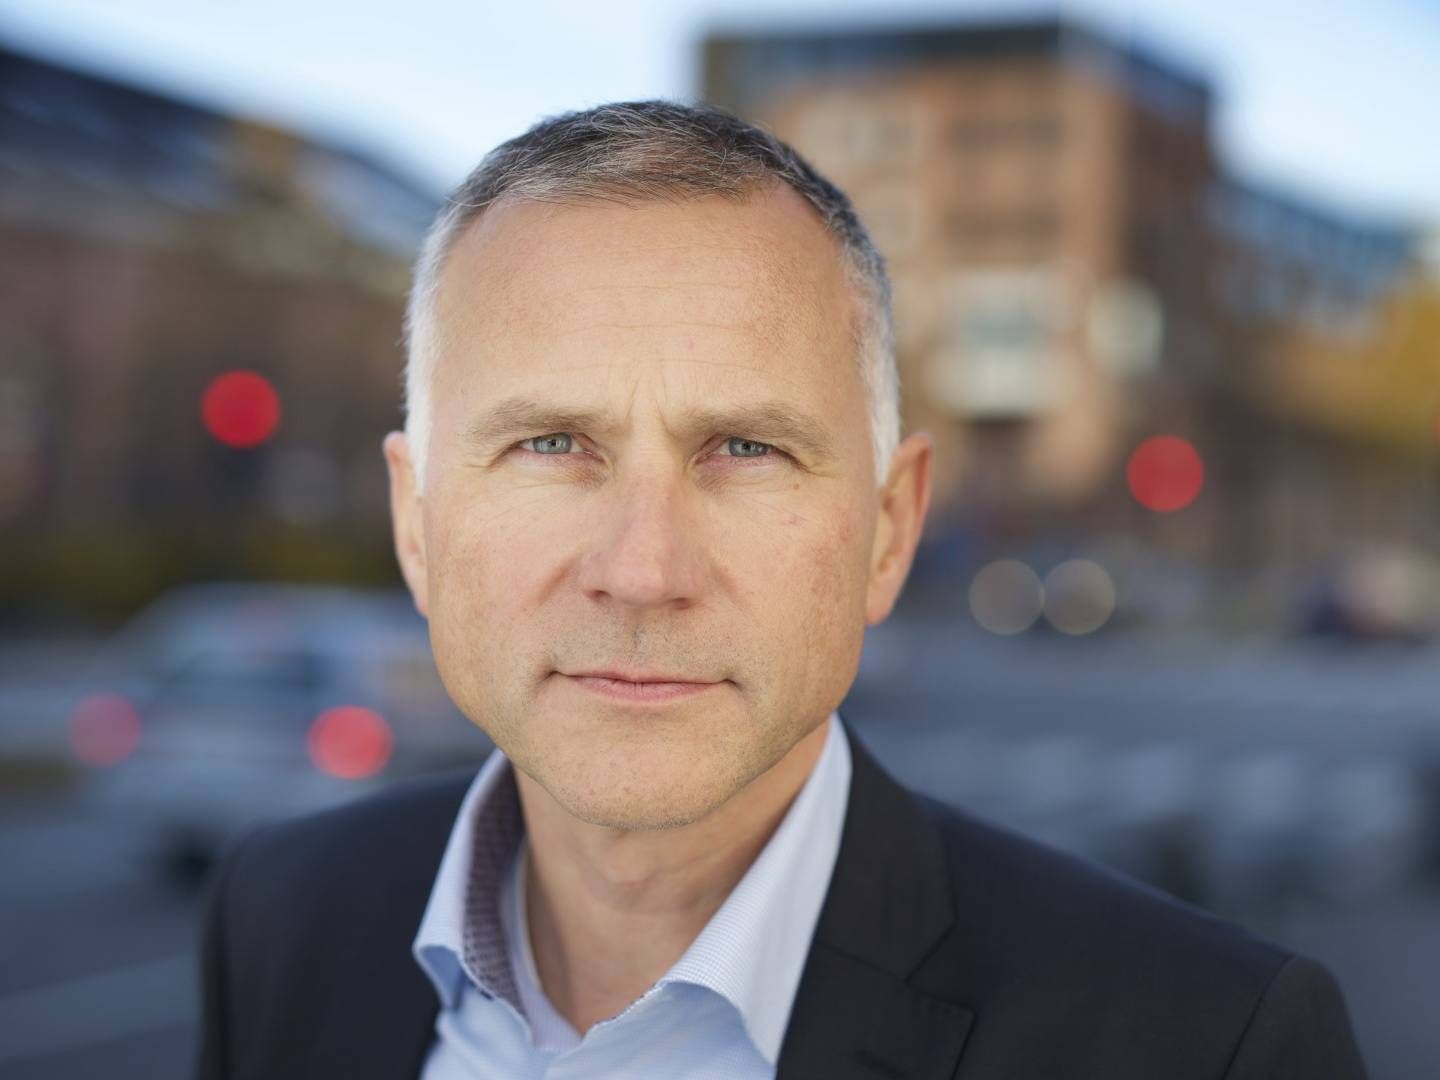 Informasjonsdirektør Tom Staavi i Finans Norge vil gi regjeringen tid til å gjennomføre endringer i finansskatten.